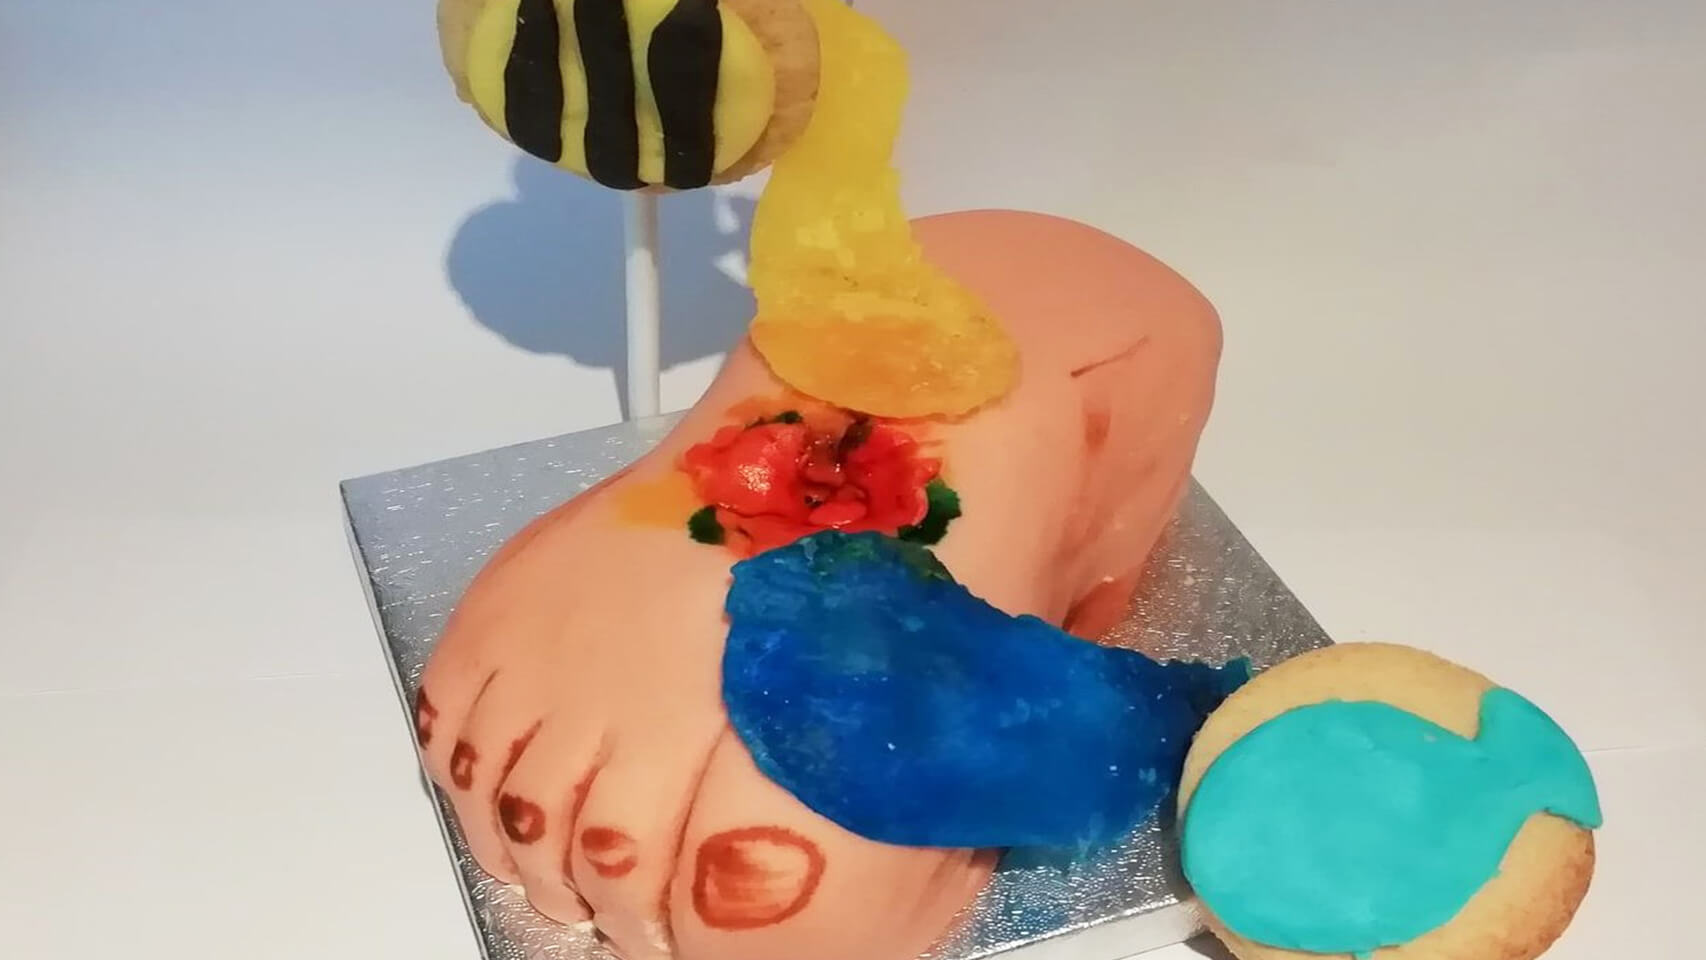 A cake created by Jenna